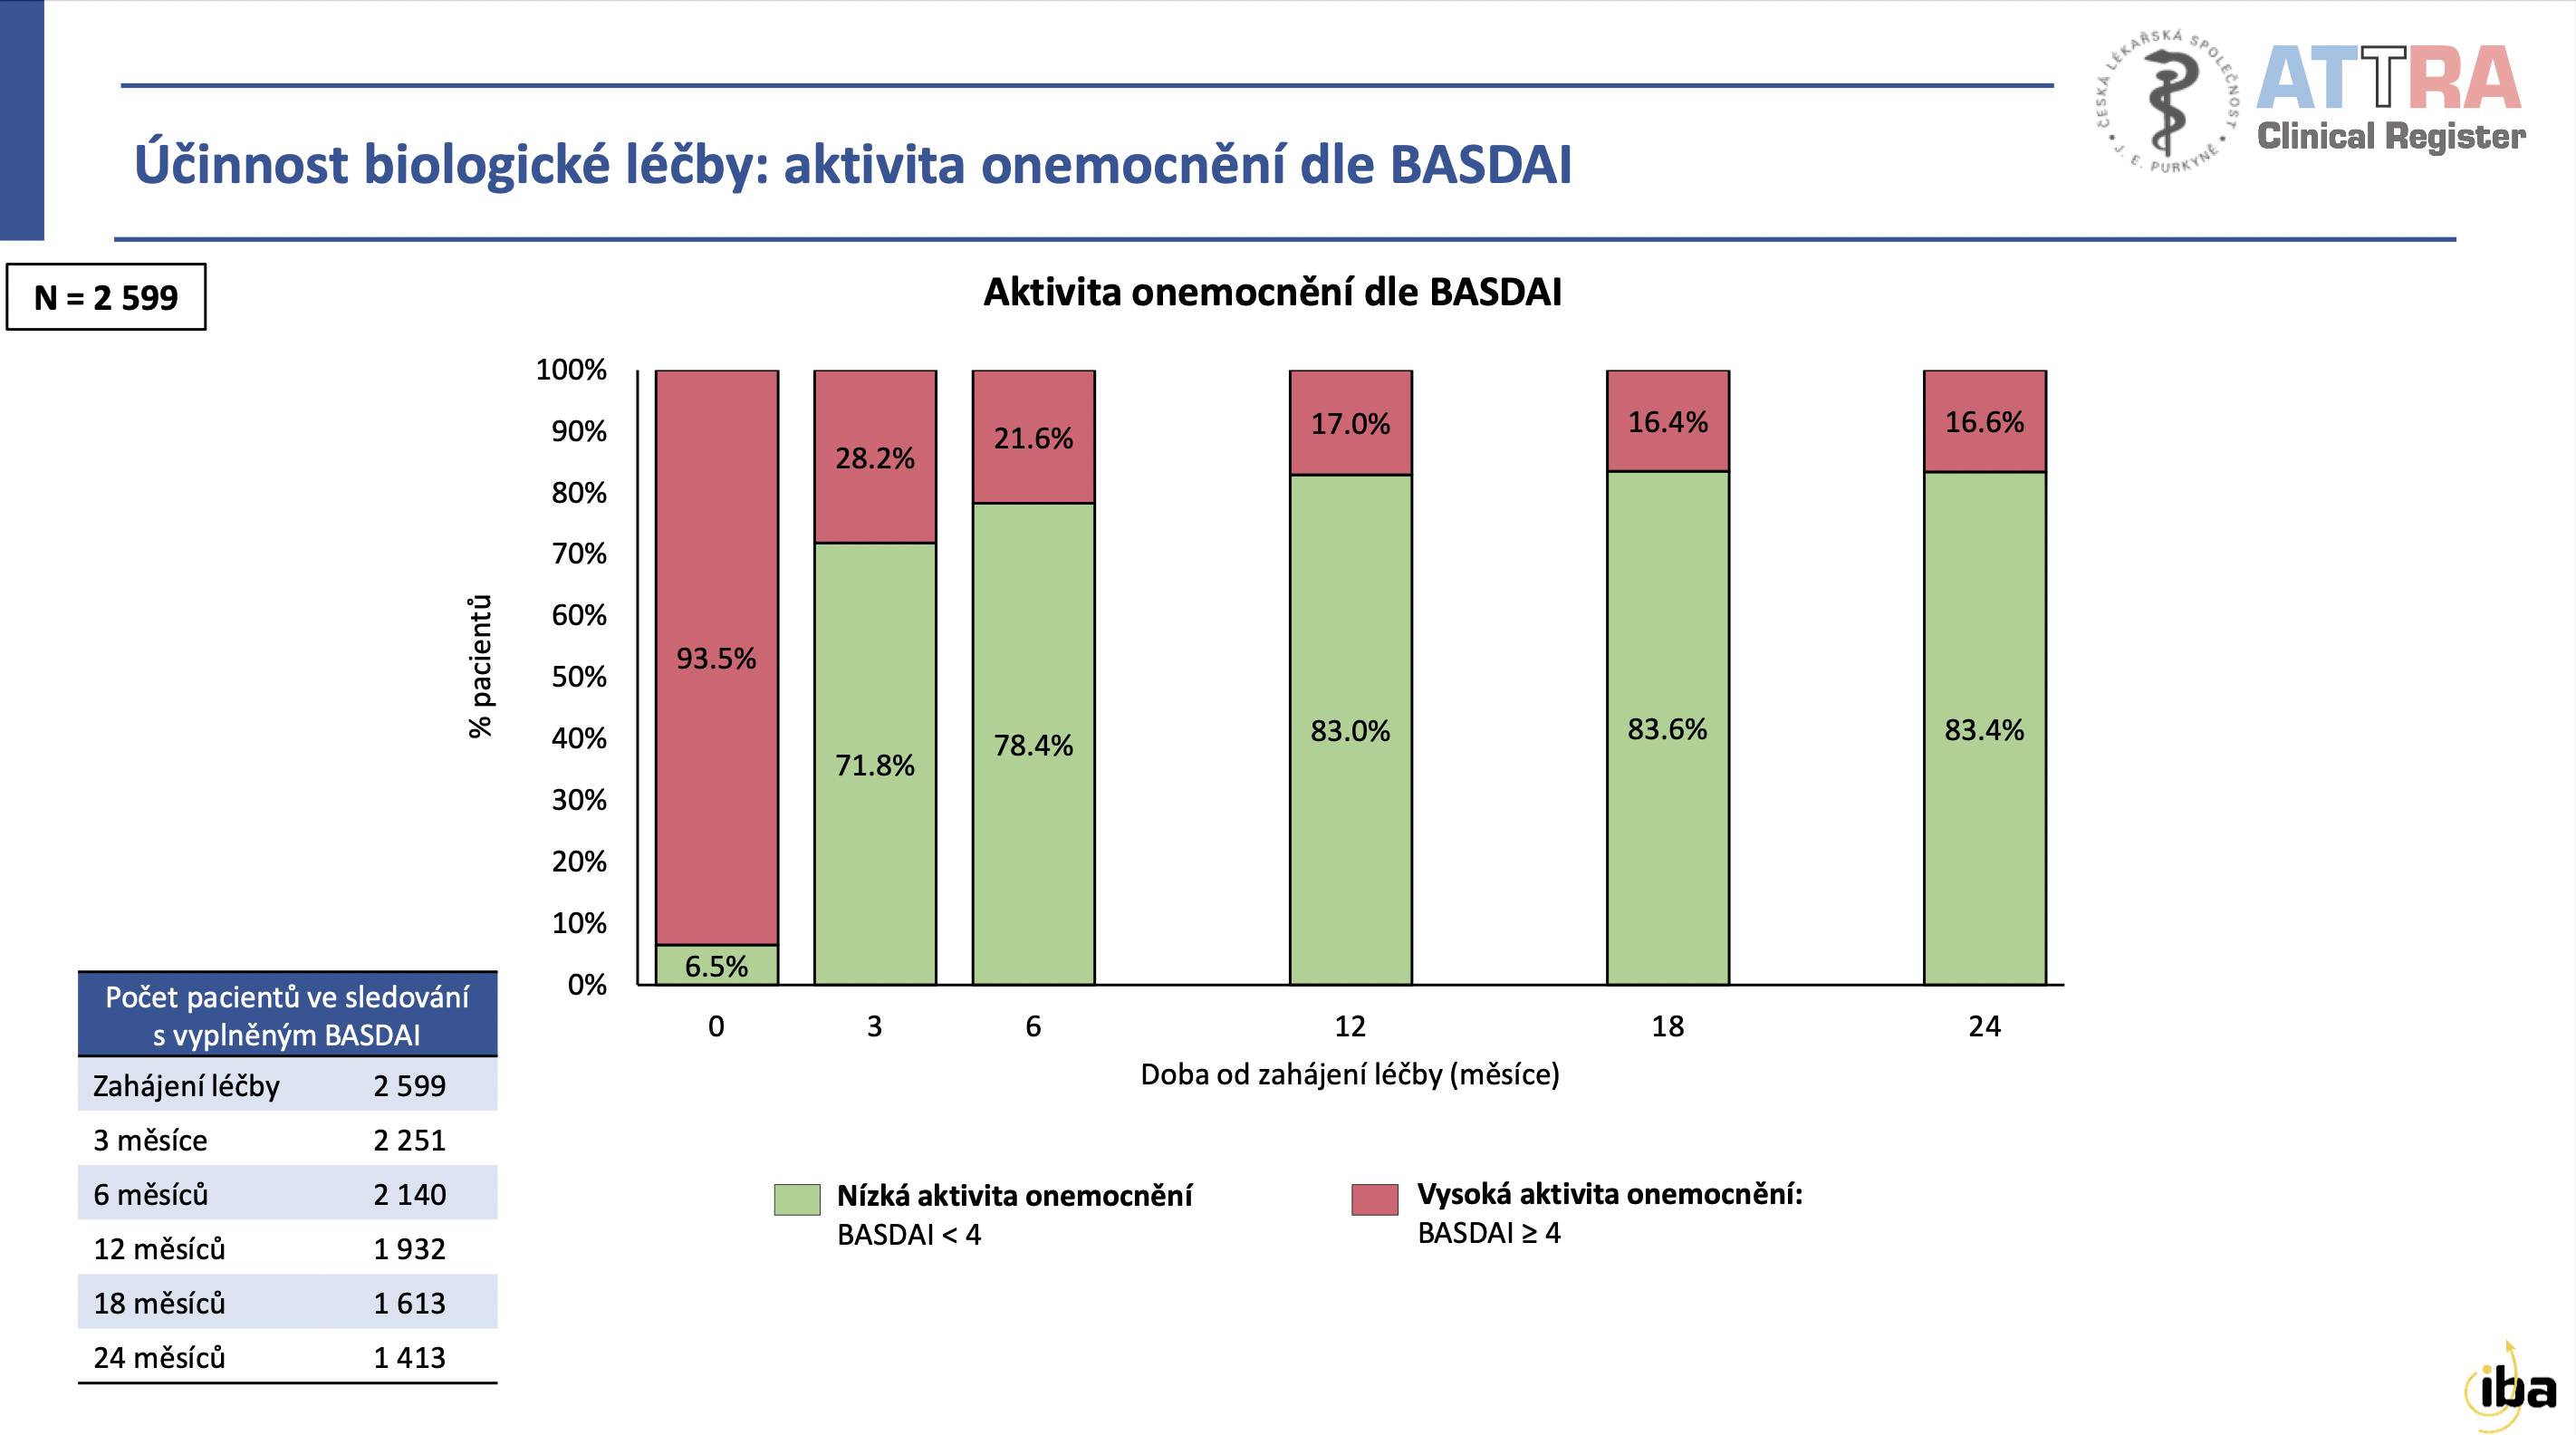 Účinnost biologické léčby podle dotazníku BASDAI.